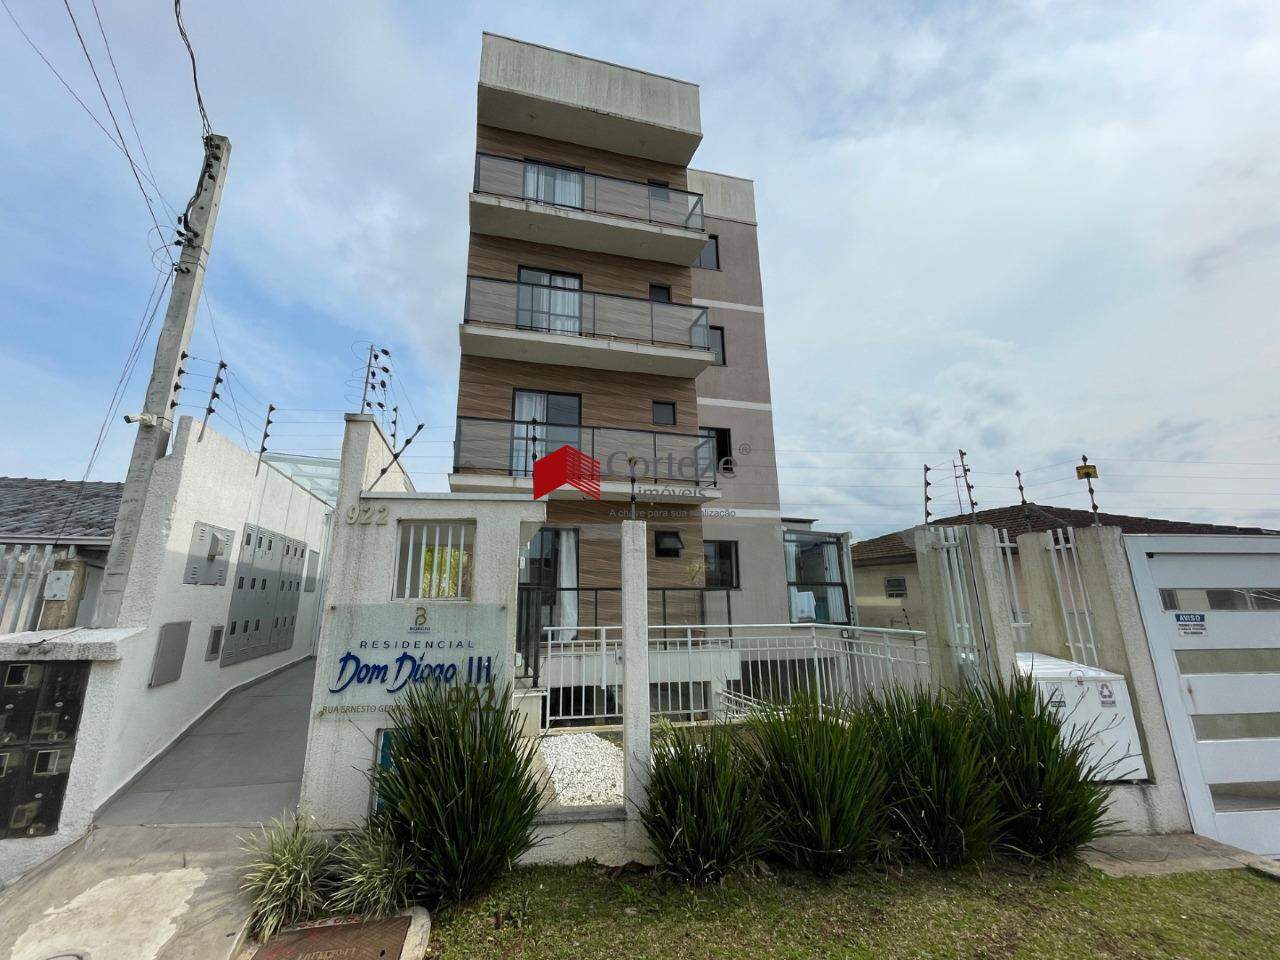 Apartamento com 3 quartos sendo 1 suíte, localizado no bairro Pedro Moro.